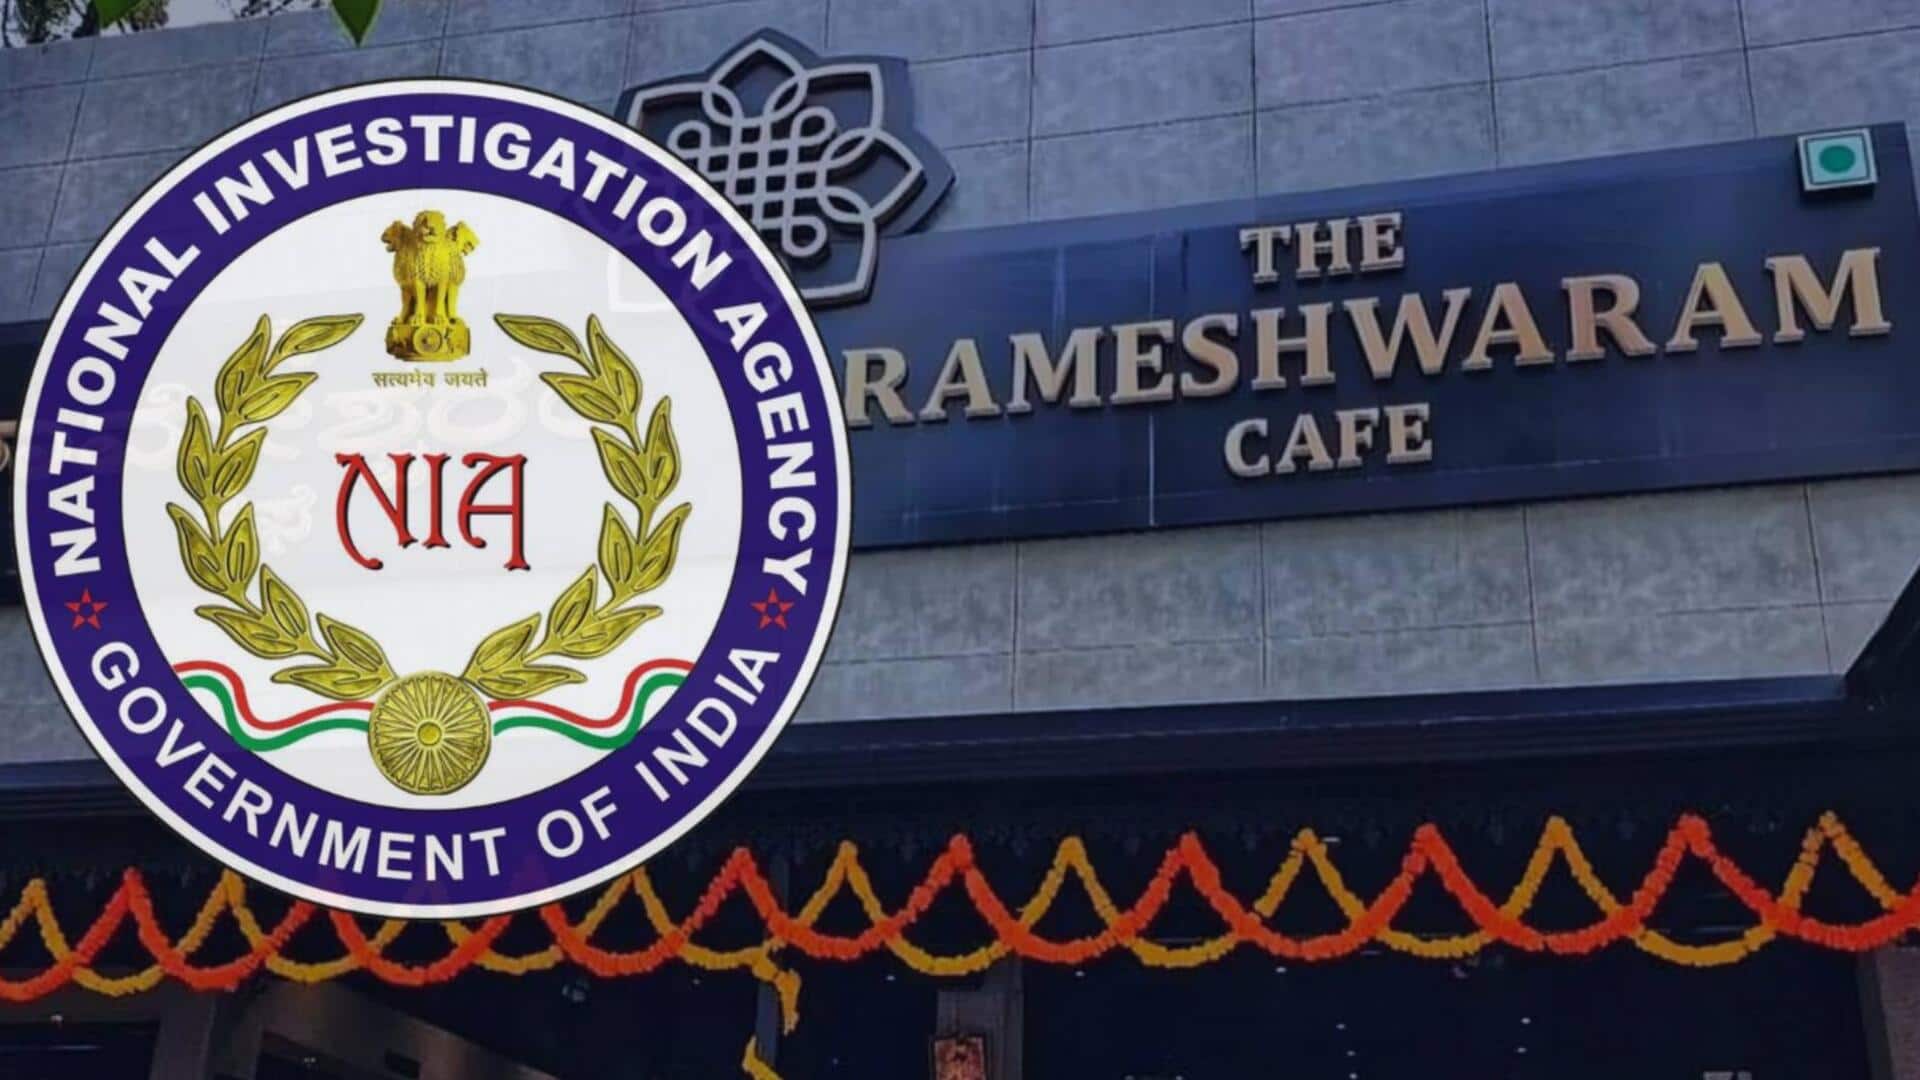 रामेश्वरम कैफे में धमाका करने वाला मुख्य आरोपी गिरफ्तार, सहयोगी भी पकड़ा गया